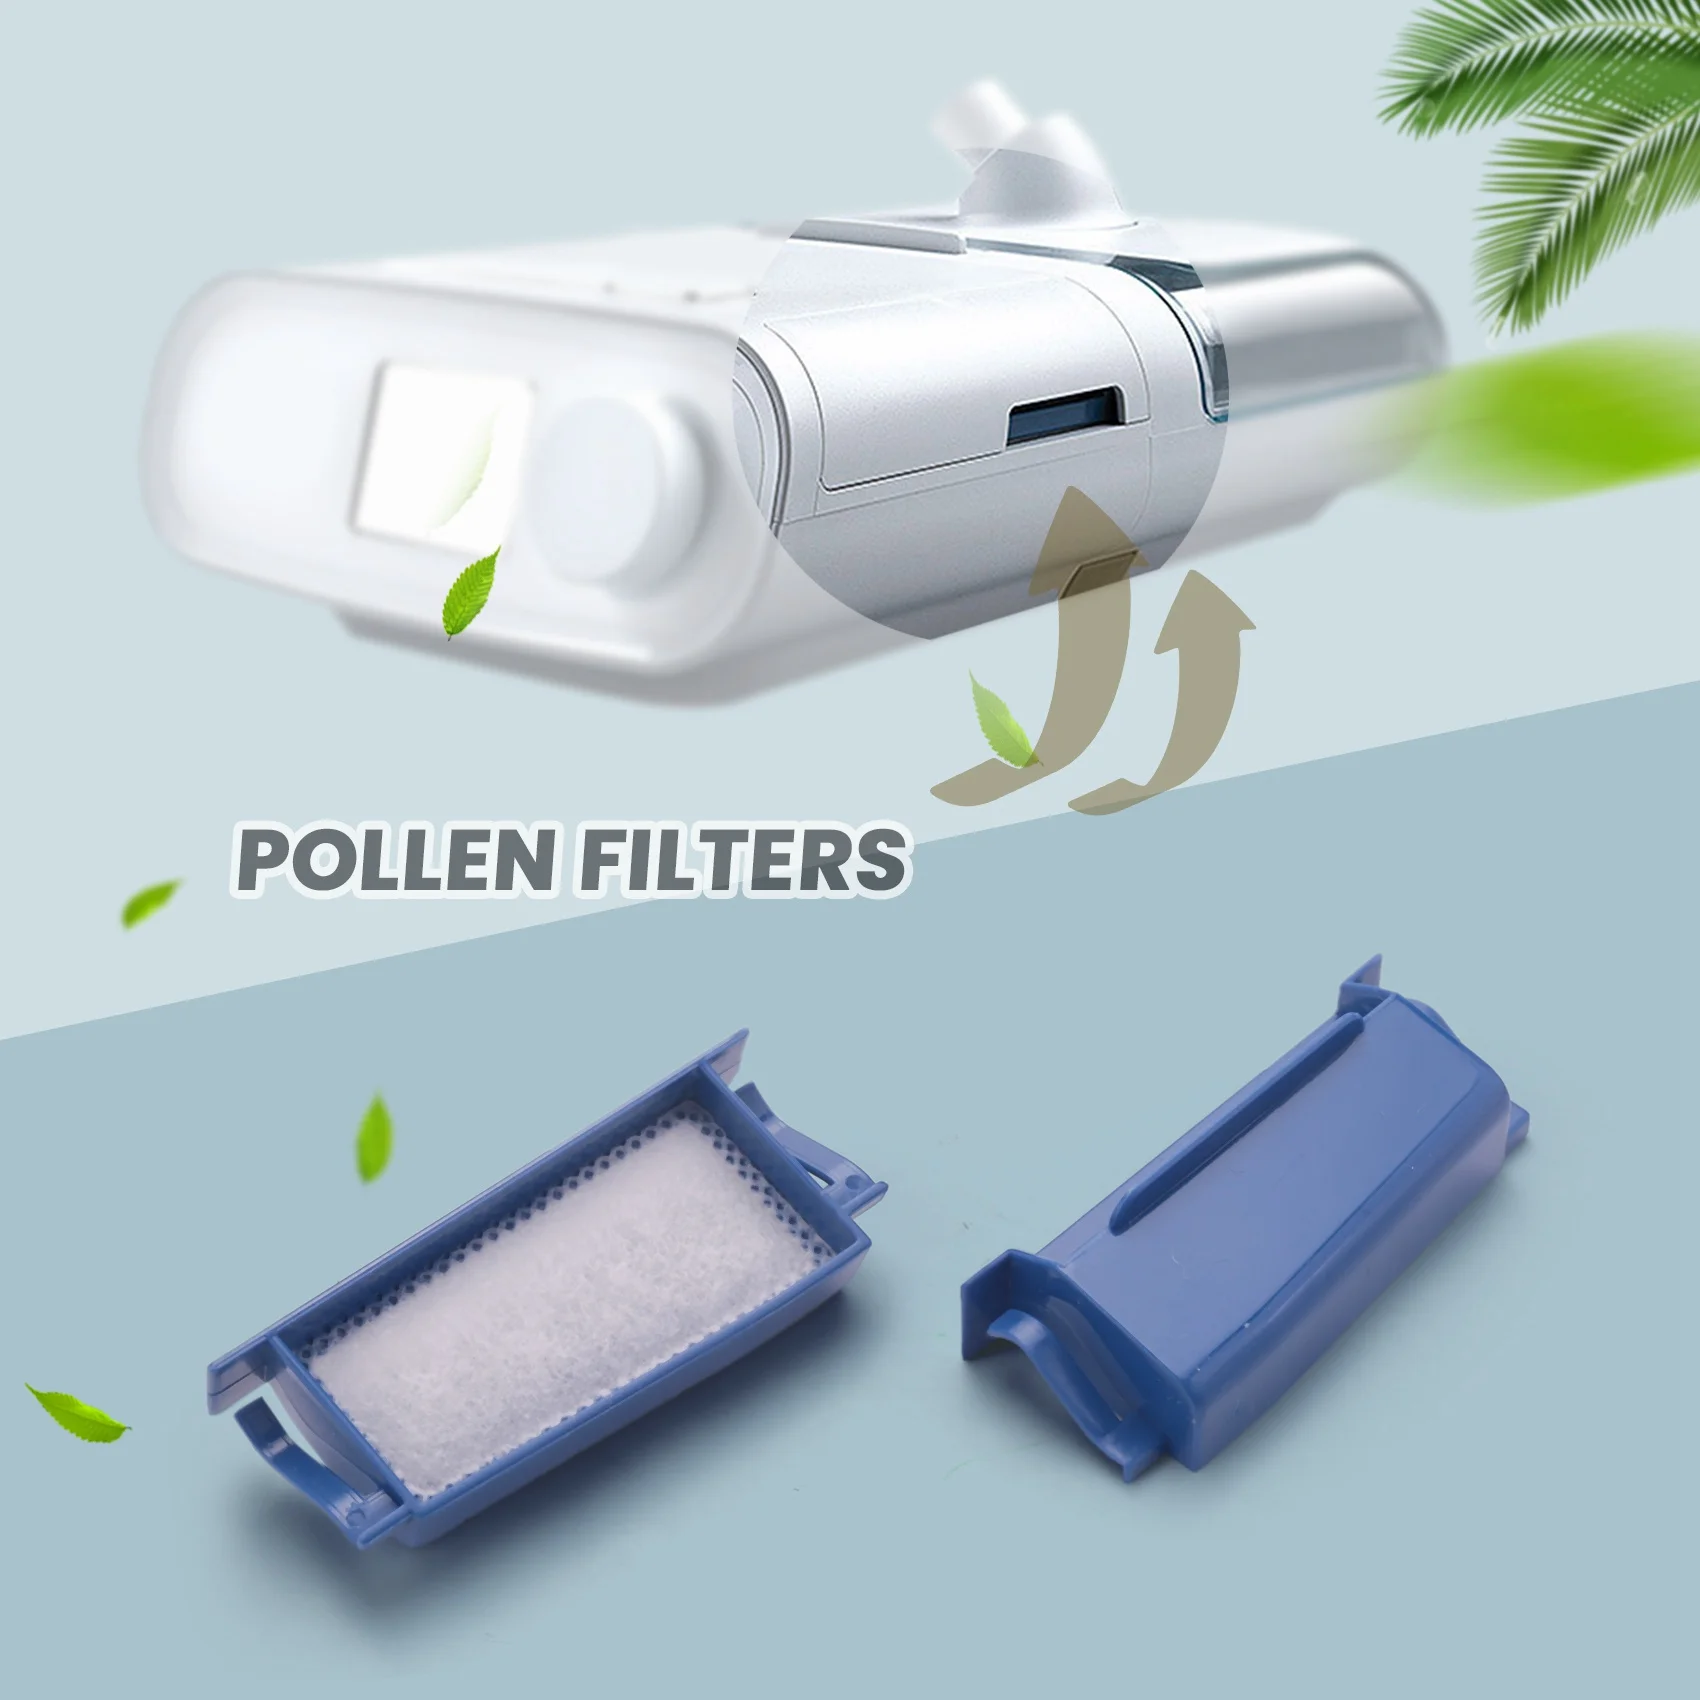 

Наборы фильтров для Philips express, dreamstation включают 2 многоразовых фильтра и 6 одноразовых ультратонких фильтров